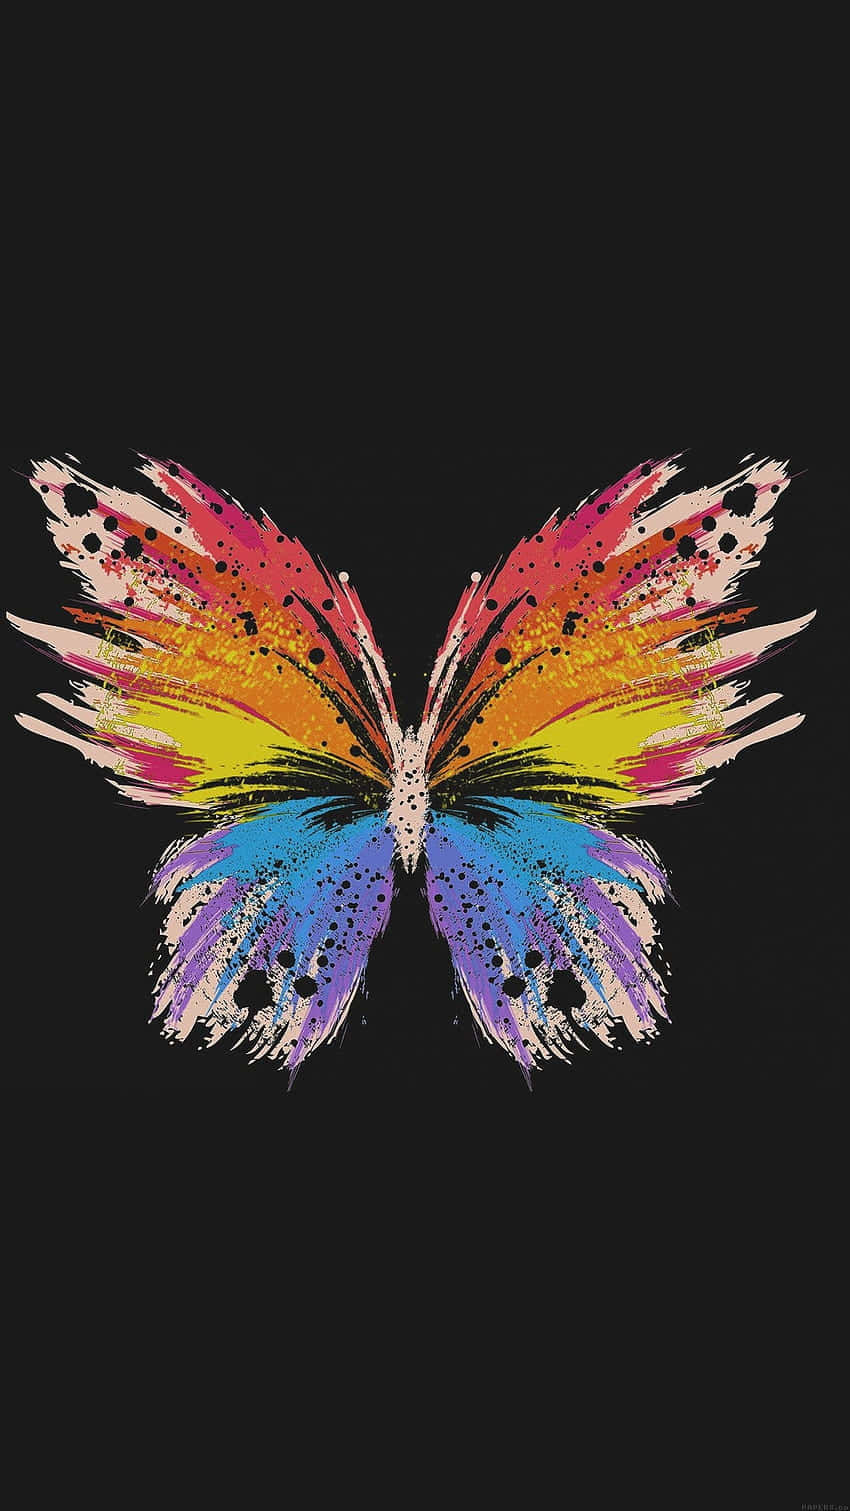 Colorful Moth Artwork Wallpaper